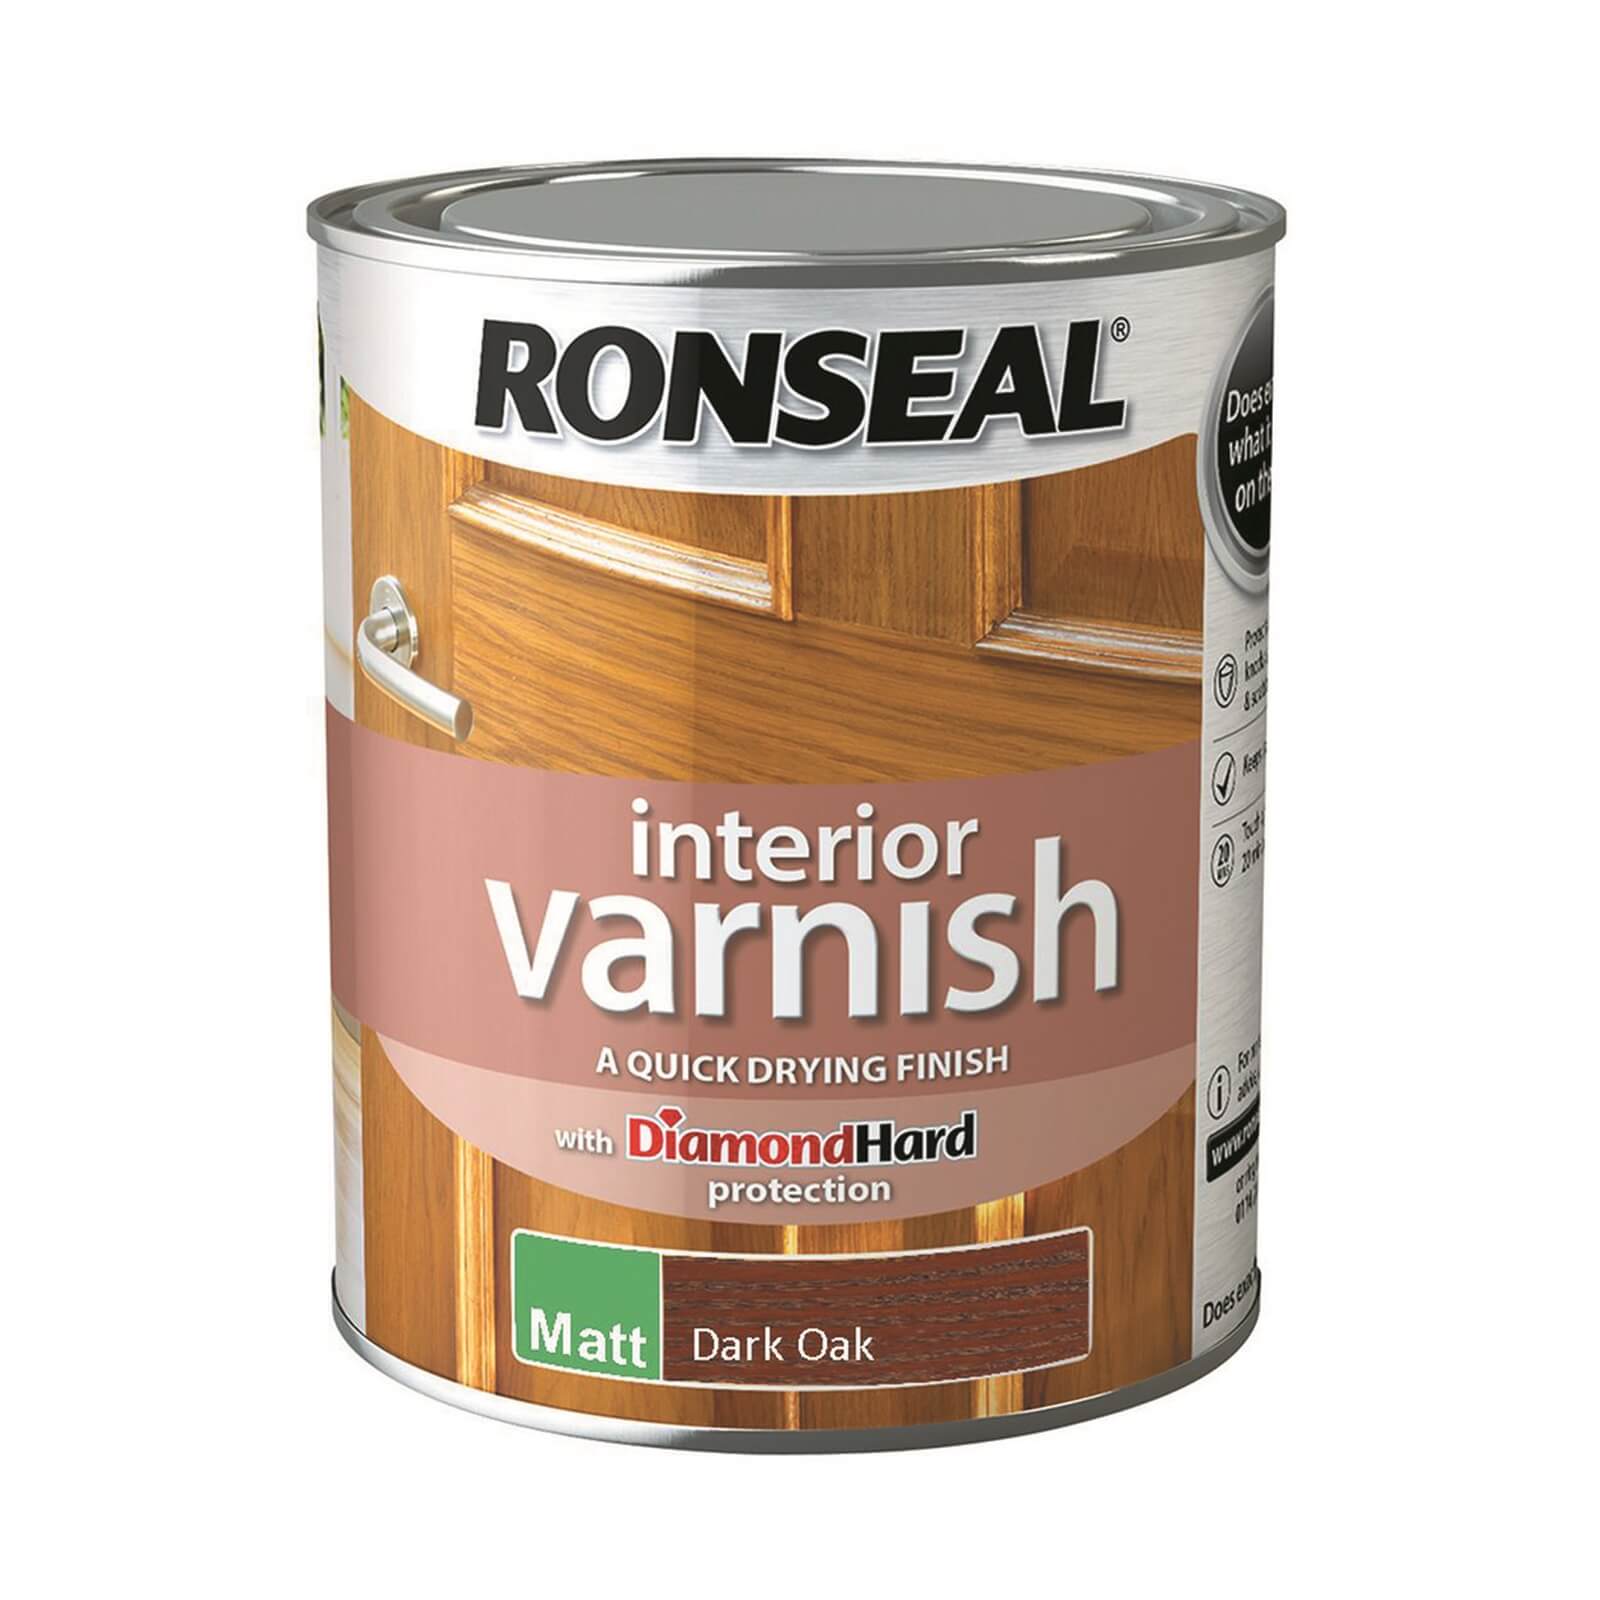 Ronseal Interior Varnish Matt Dark Oak - 750ml